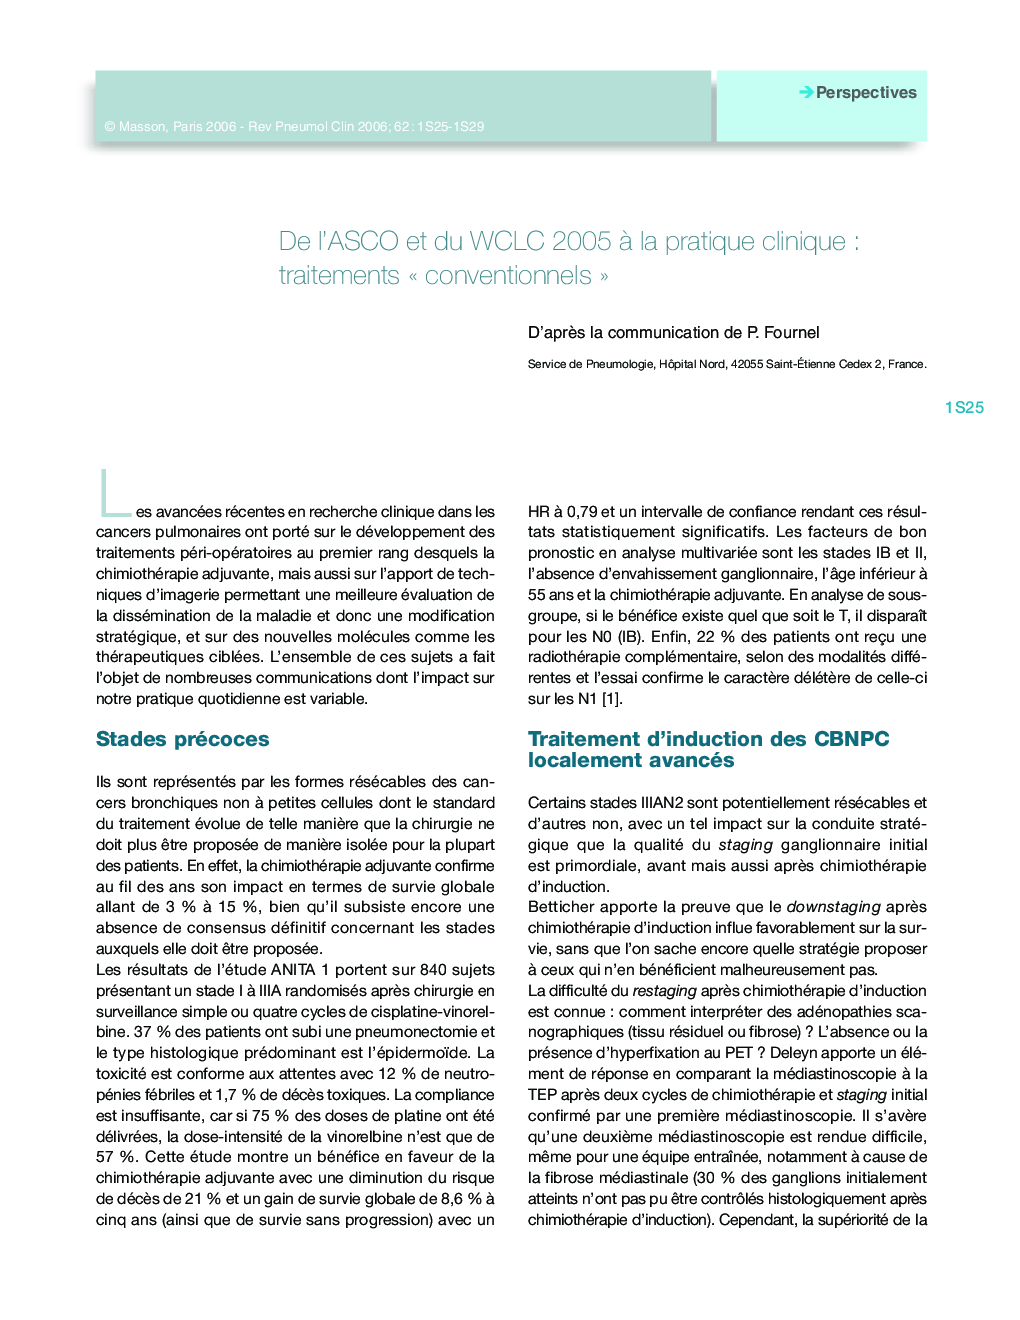 De l'ASCO et du WCLC 2005 Ã  la pratique clinique : traitements Â« conventionnels Â»